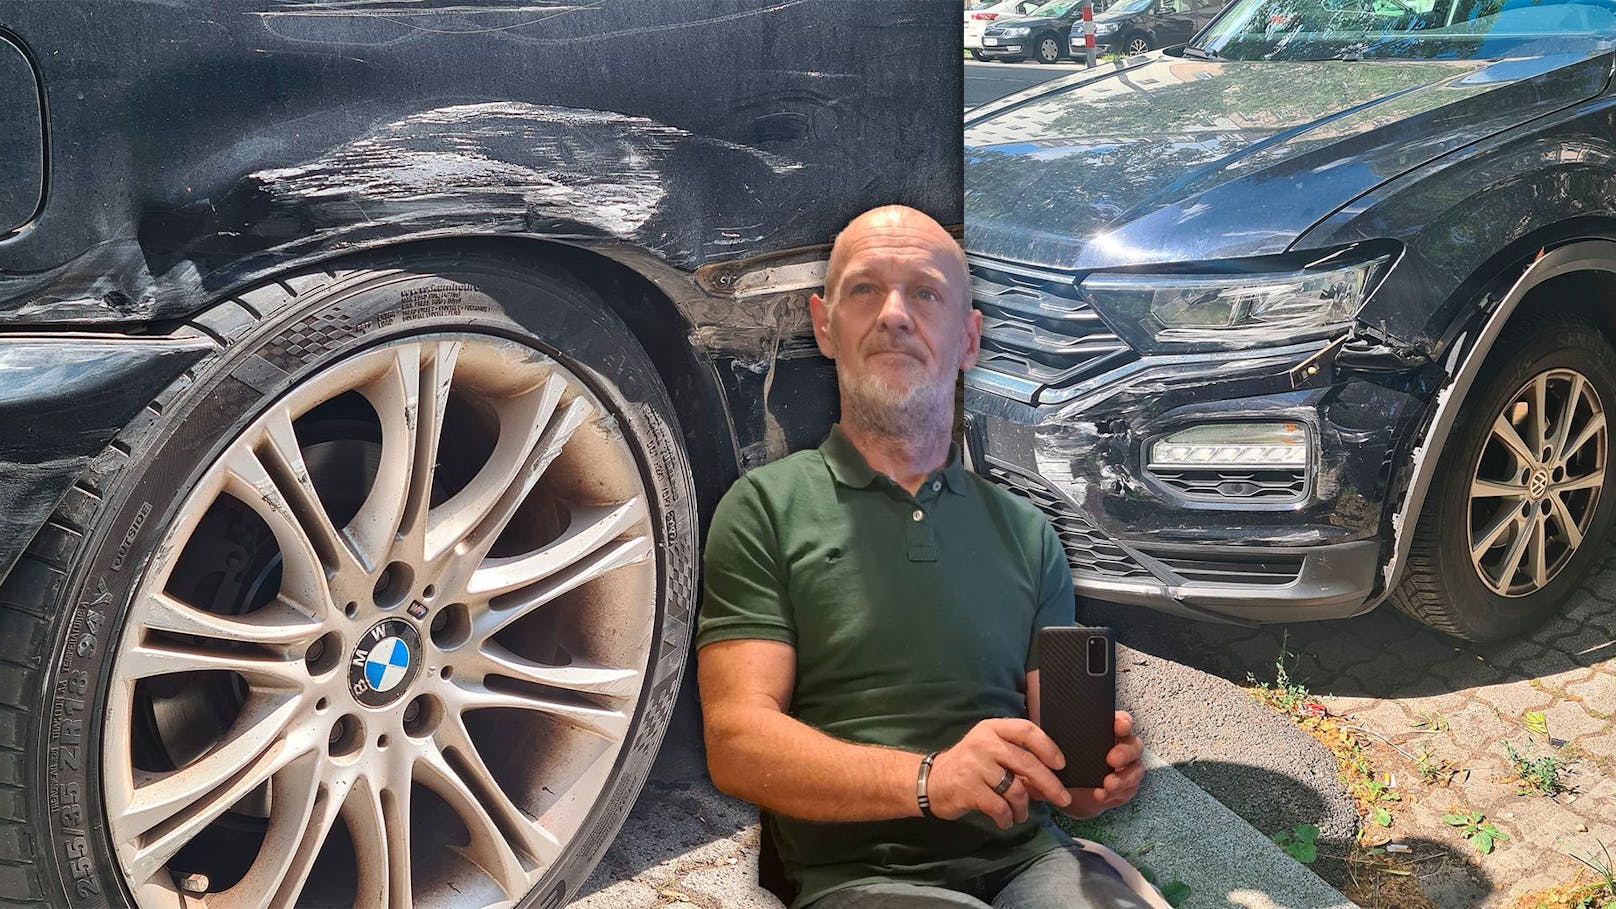 Teenie zerstört BMW von Invaliden – der muss nun zahlen